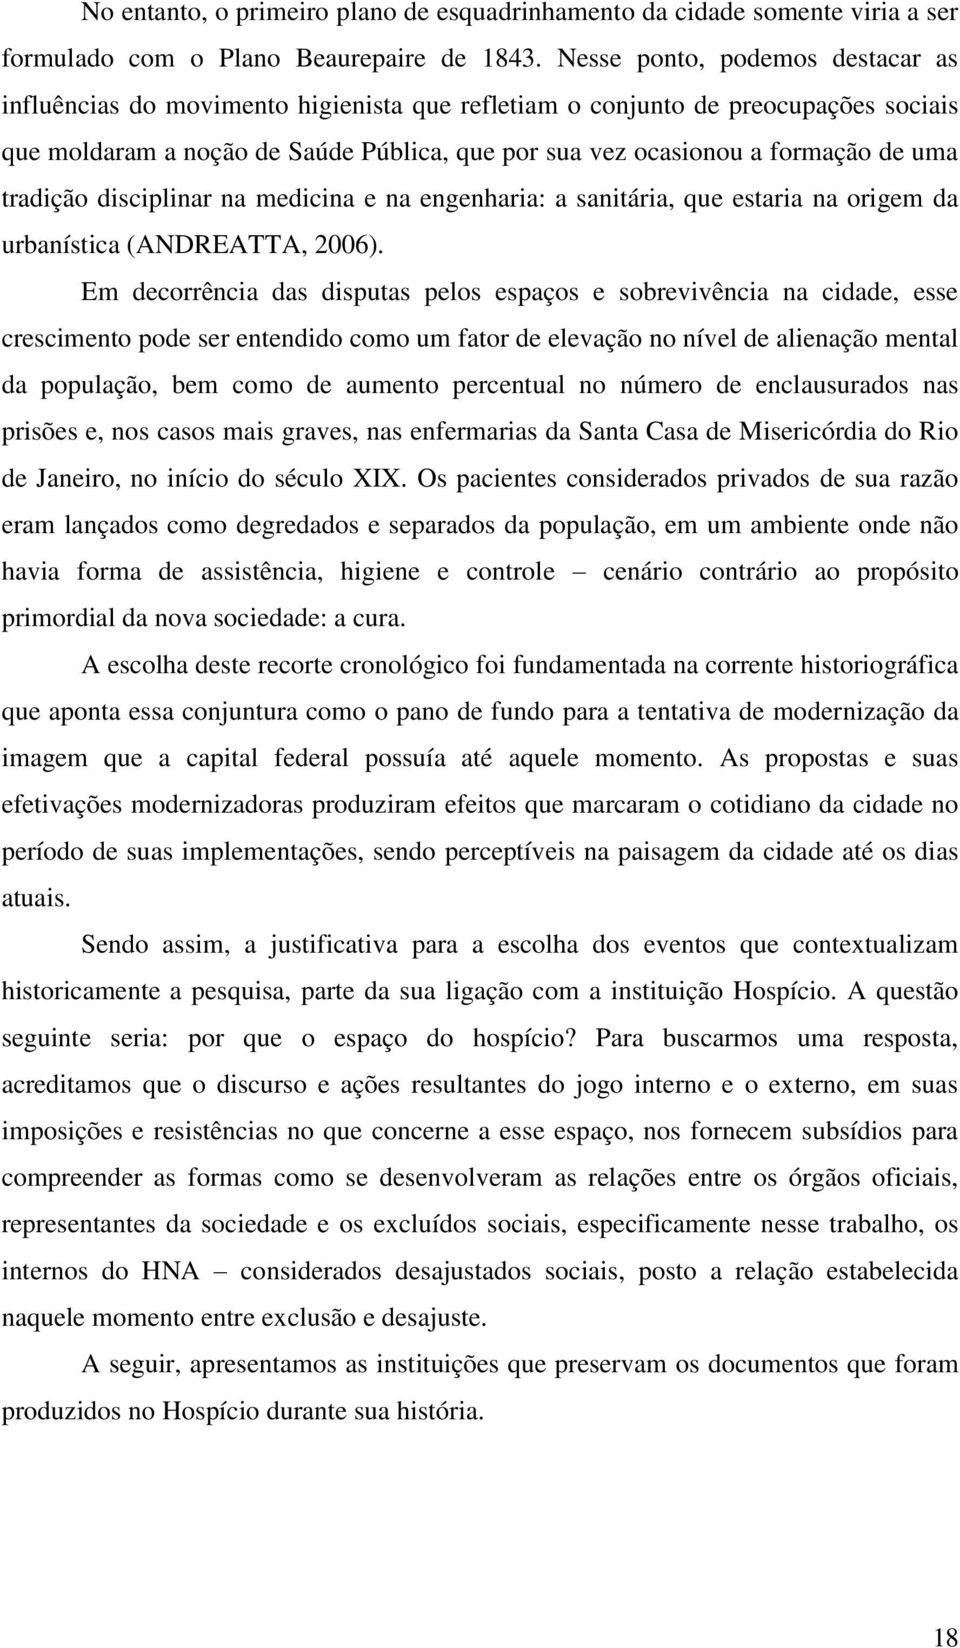 uma tradição disciplinar na medicina e na engenharia: a sanitária, que estaria na origem da urbanística (ANDREATTA, 2006).